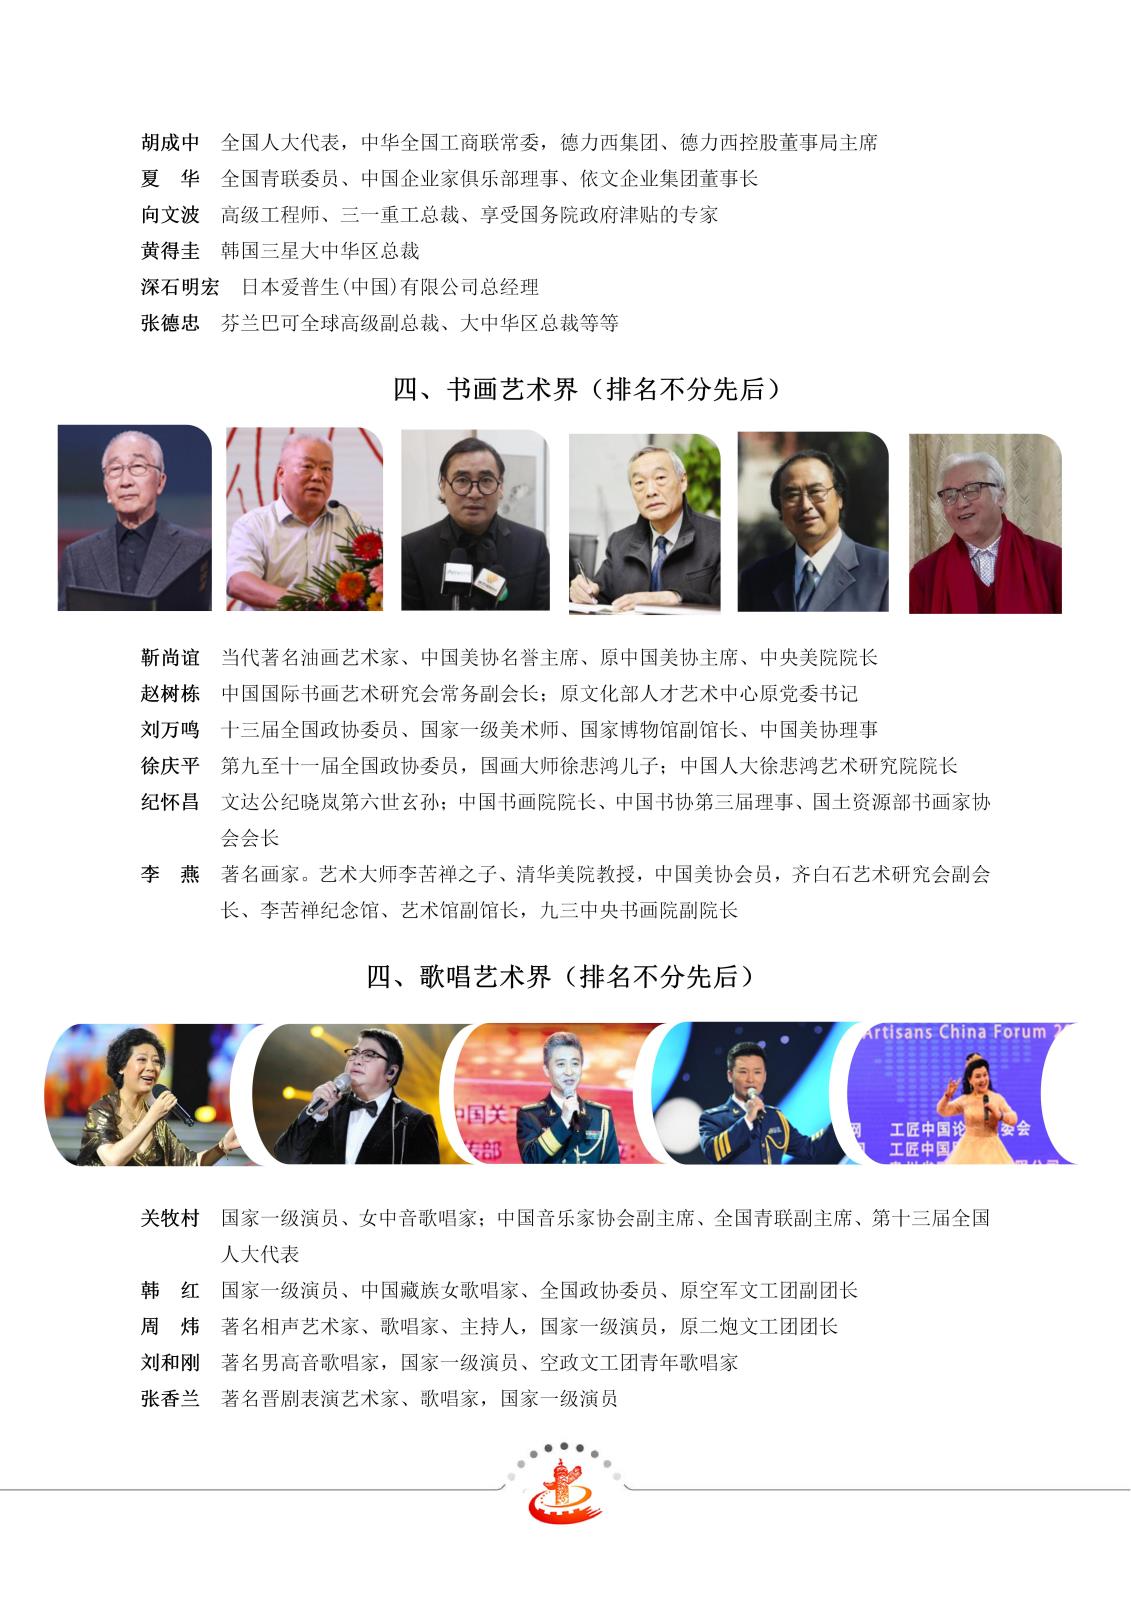 2020第四届工匠中国论坛邀请函_09.jpg